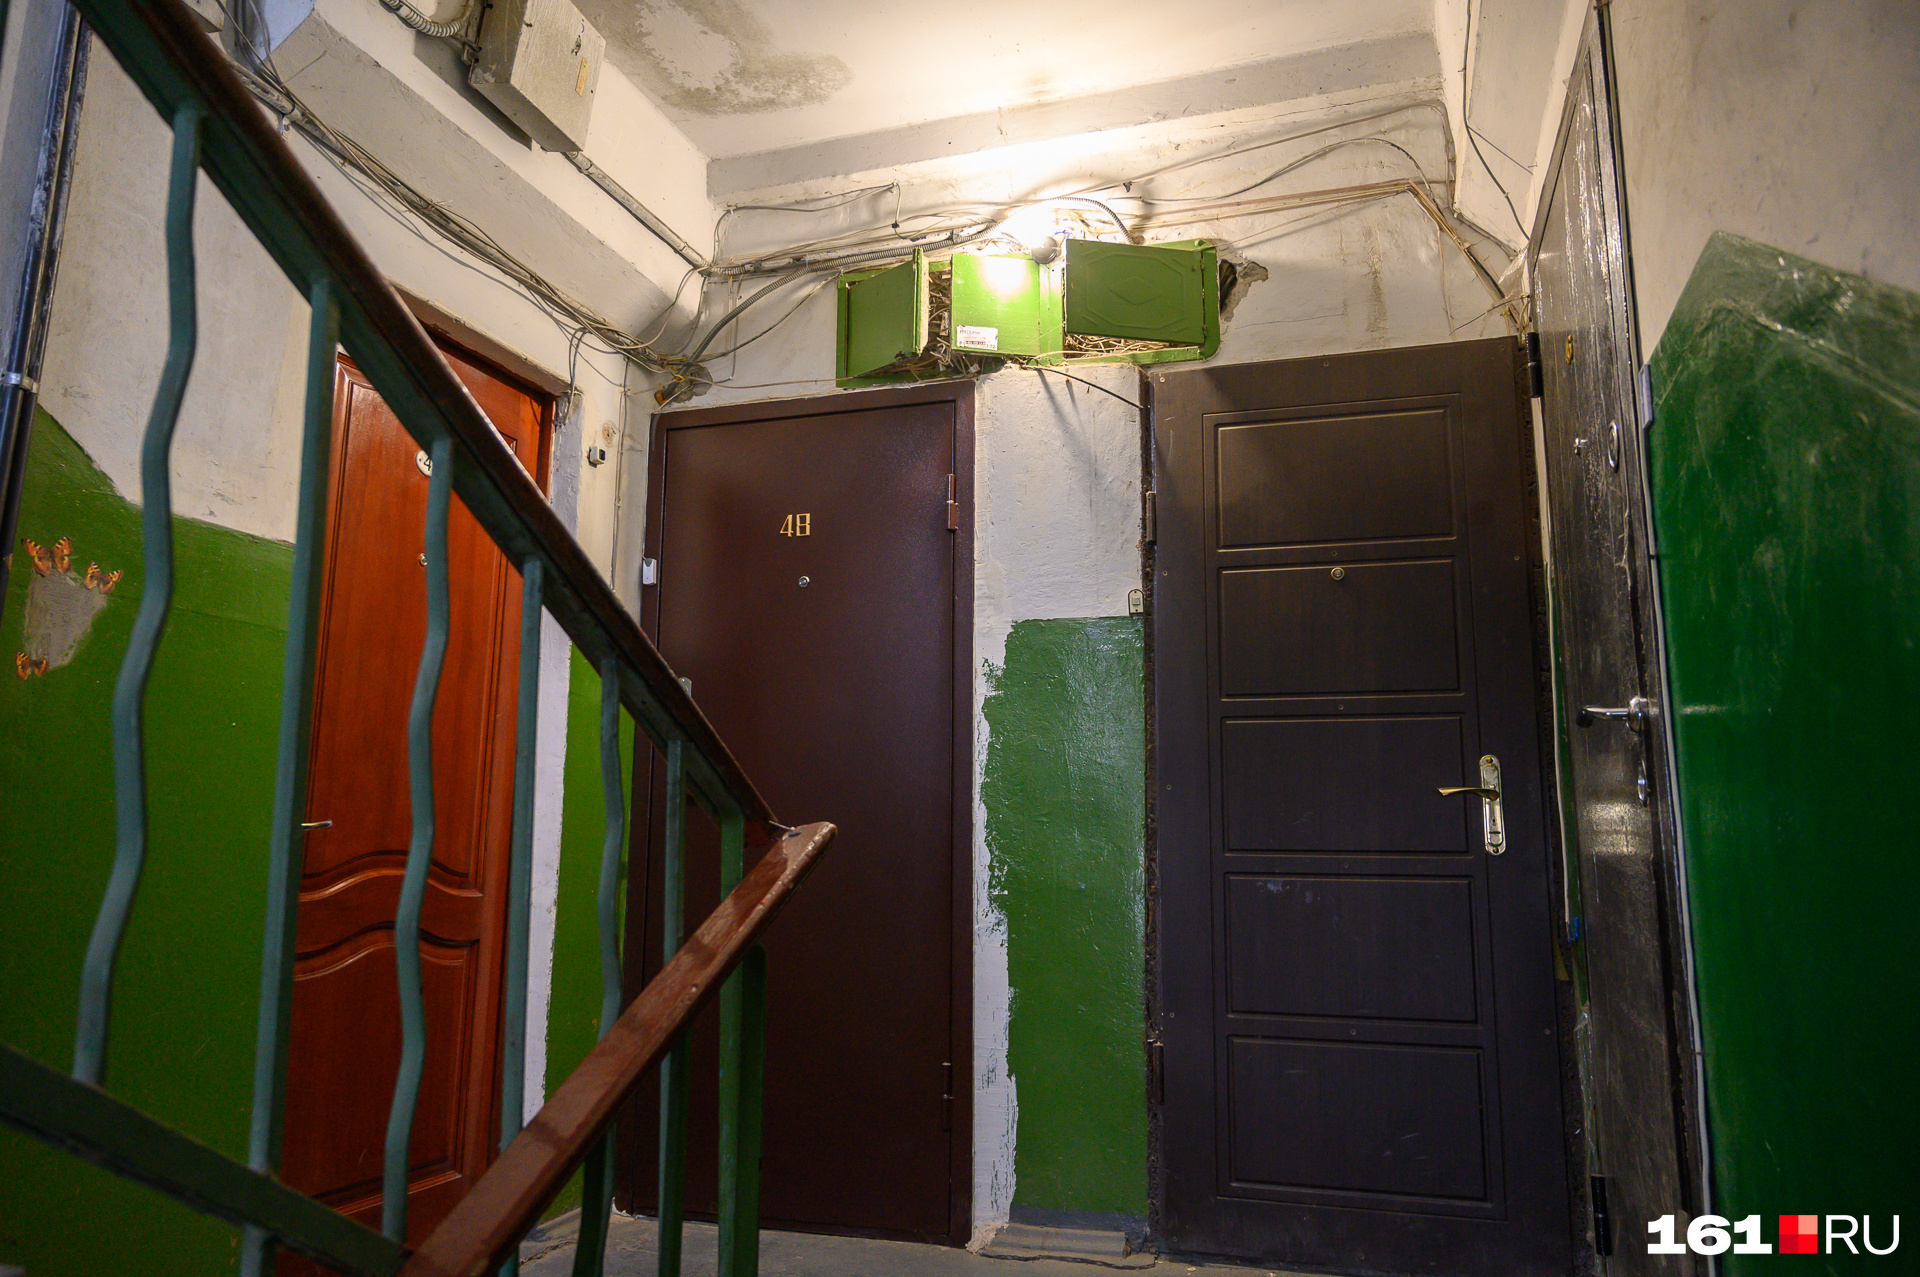 В подъездах жильцы сами периодически красили стены, так как ремонта в доме не было со времен постройки